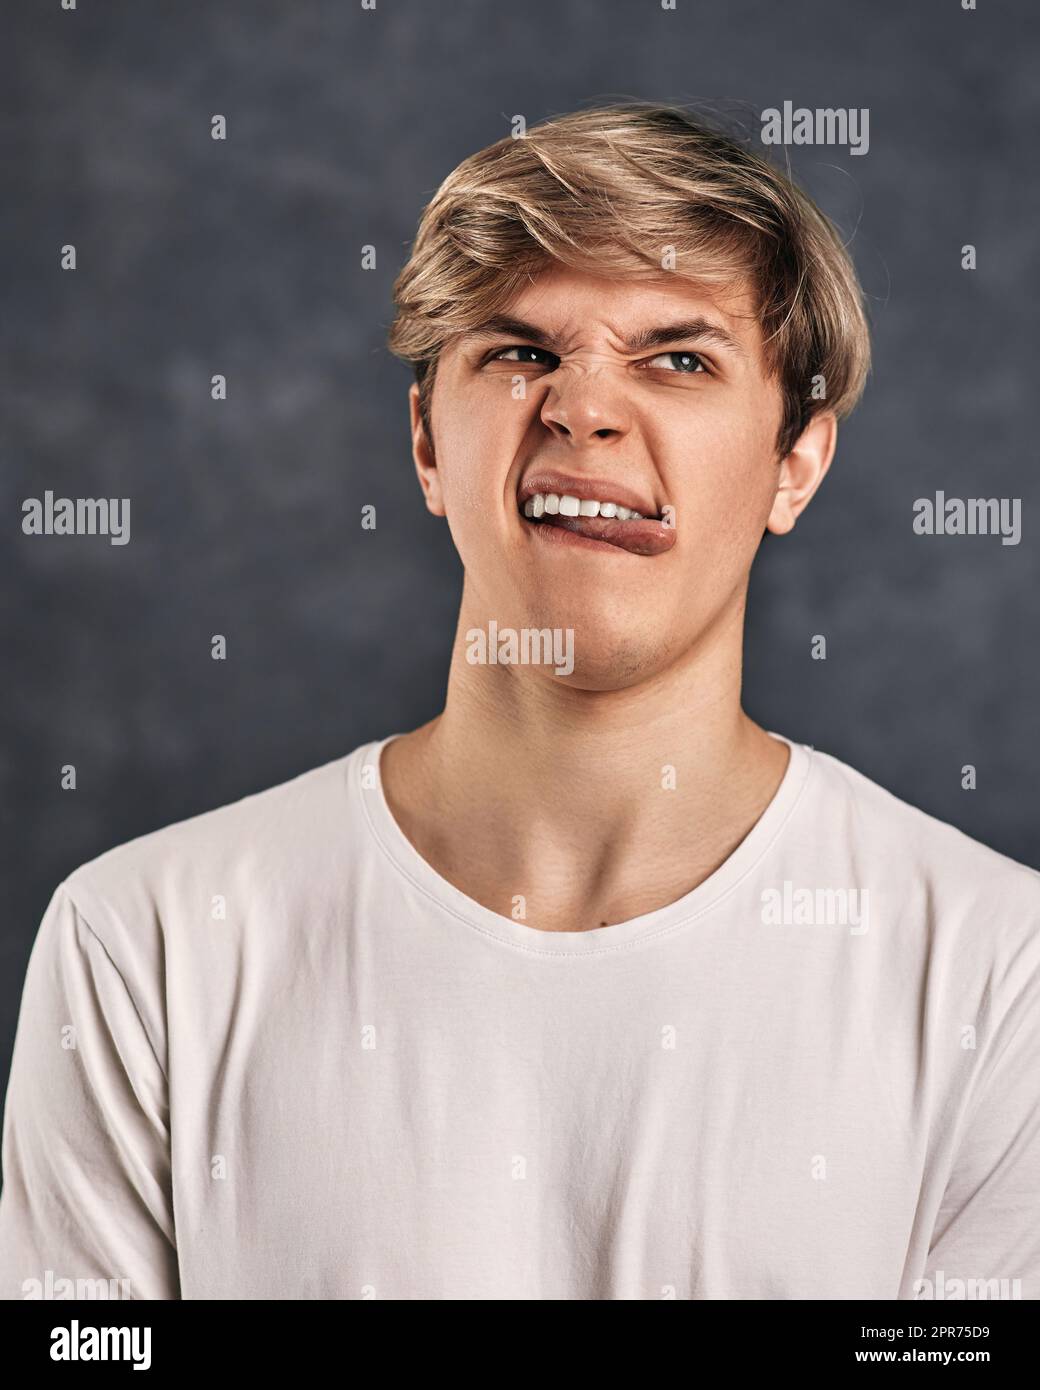 Junger Mann, der Negativität auf grauem Hintergrund ausdrückt. Stockfoto